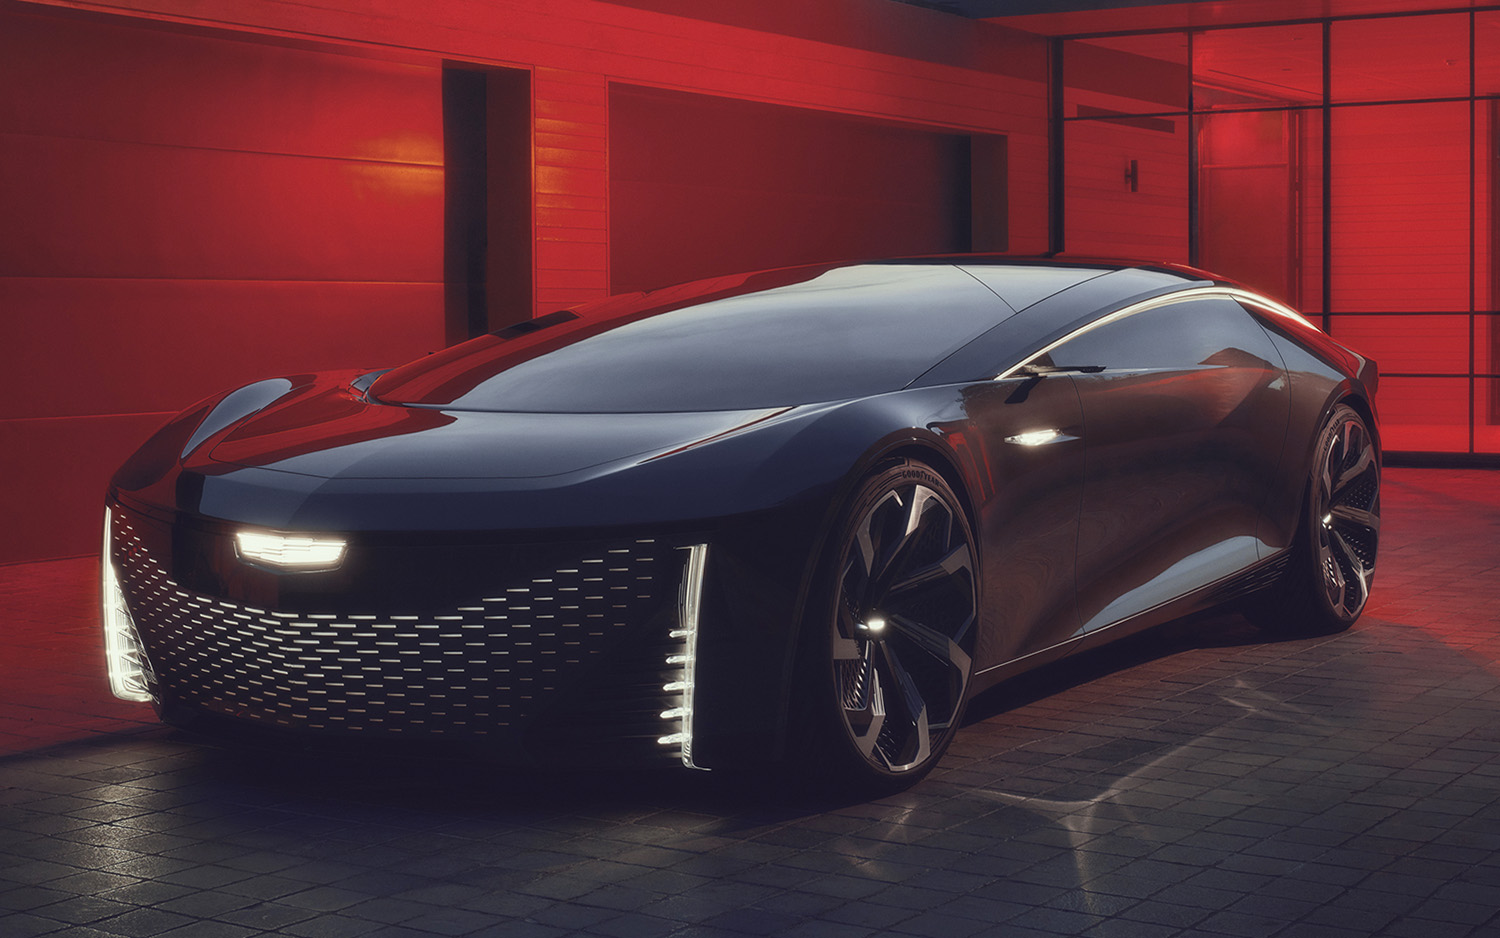 Cadillac InnerSpace Autonomous Concept